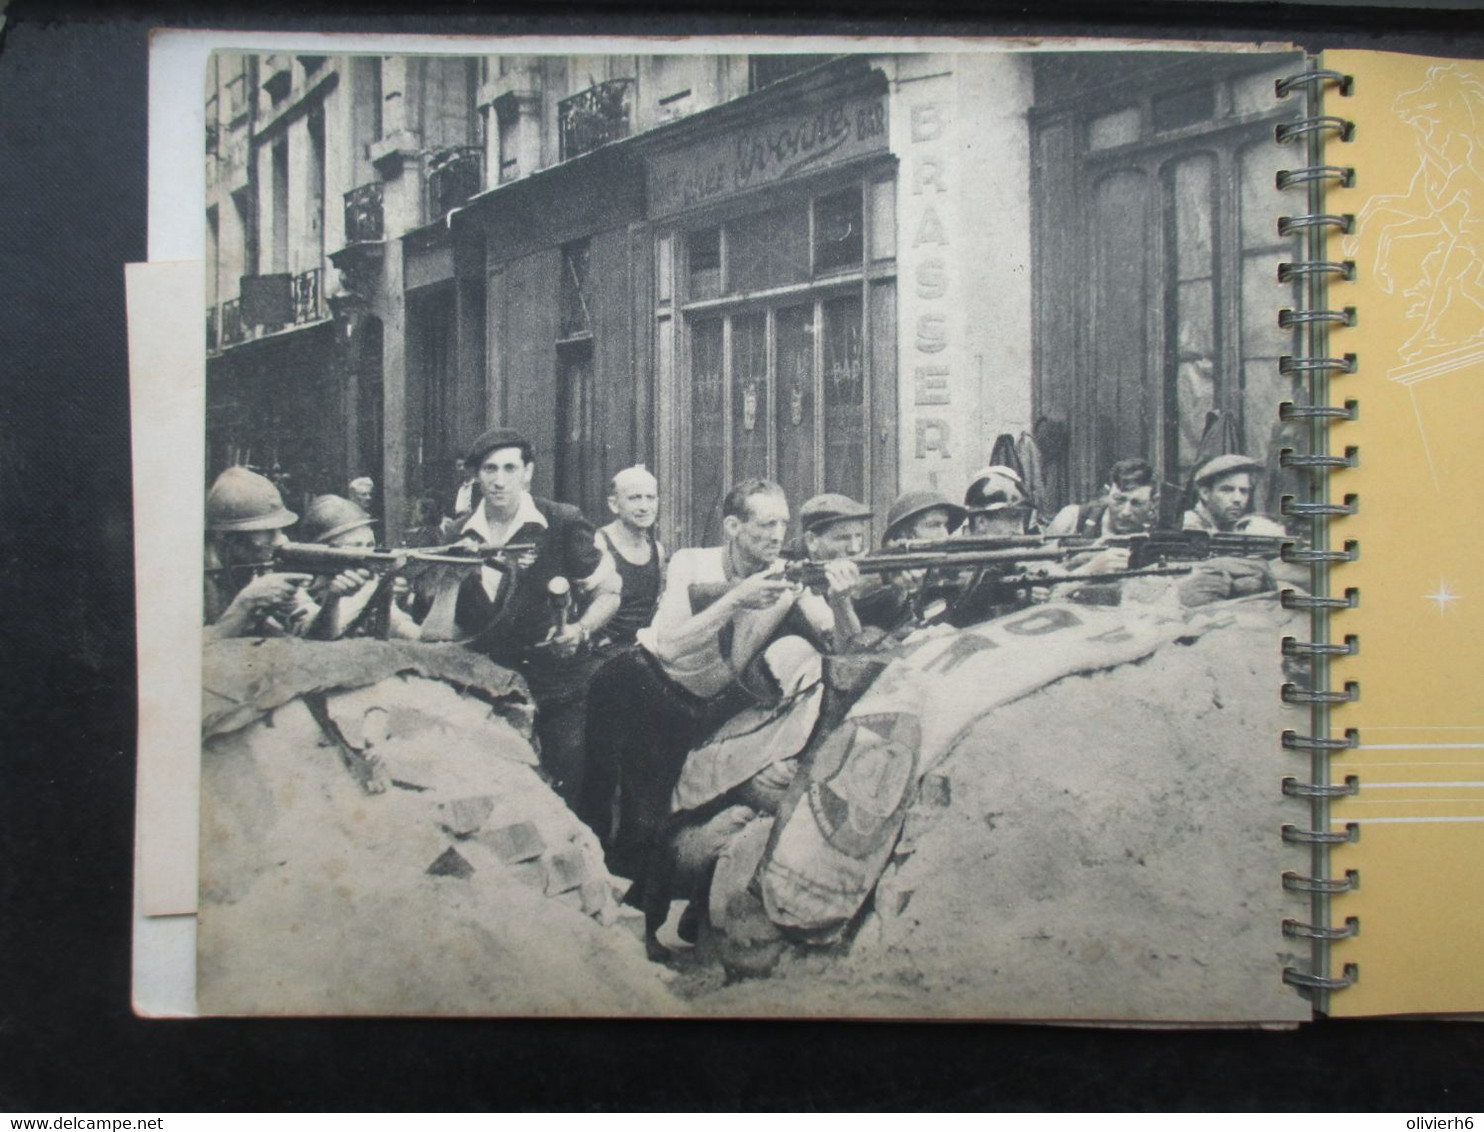 CINEMA SPECTACLE THEATRE (V2104) UNIQUE GALA de la POLICE PARISIENNE 5 décembre 1944 (25 vues) Dédicacé par les artistes